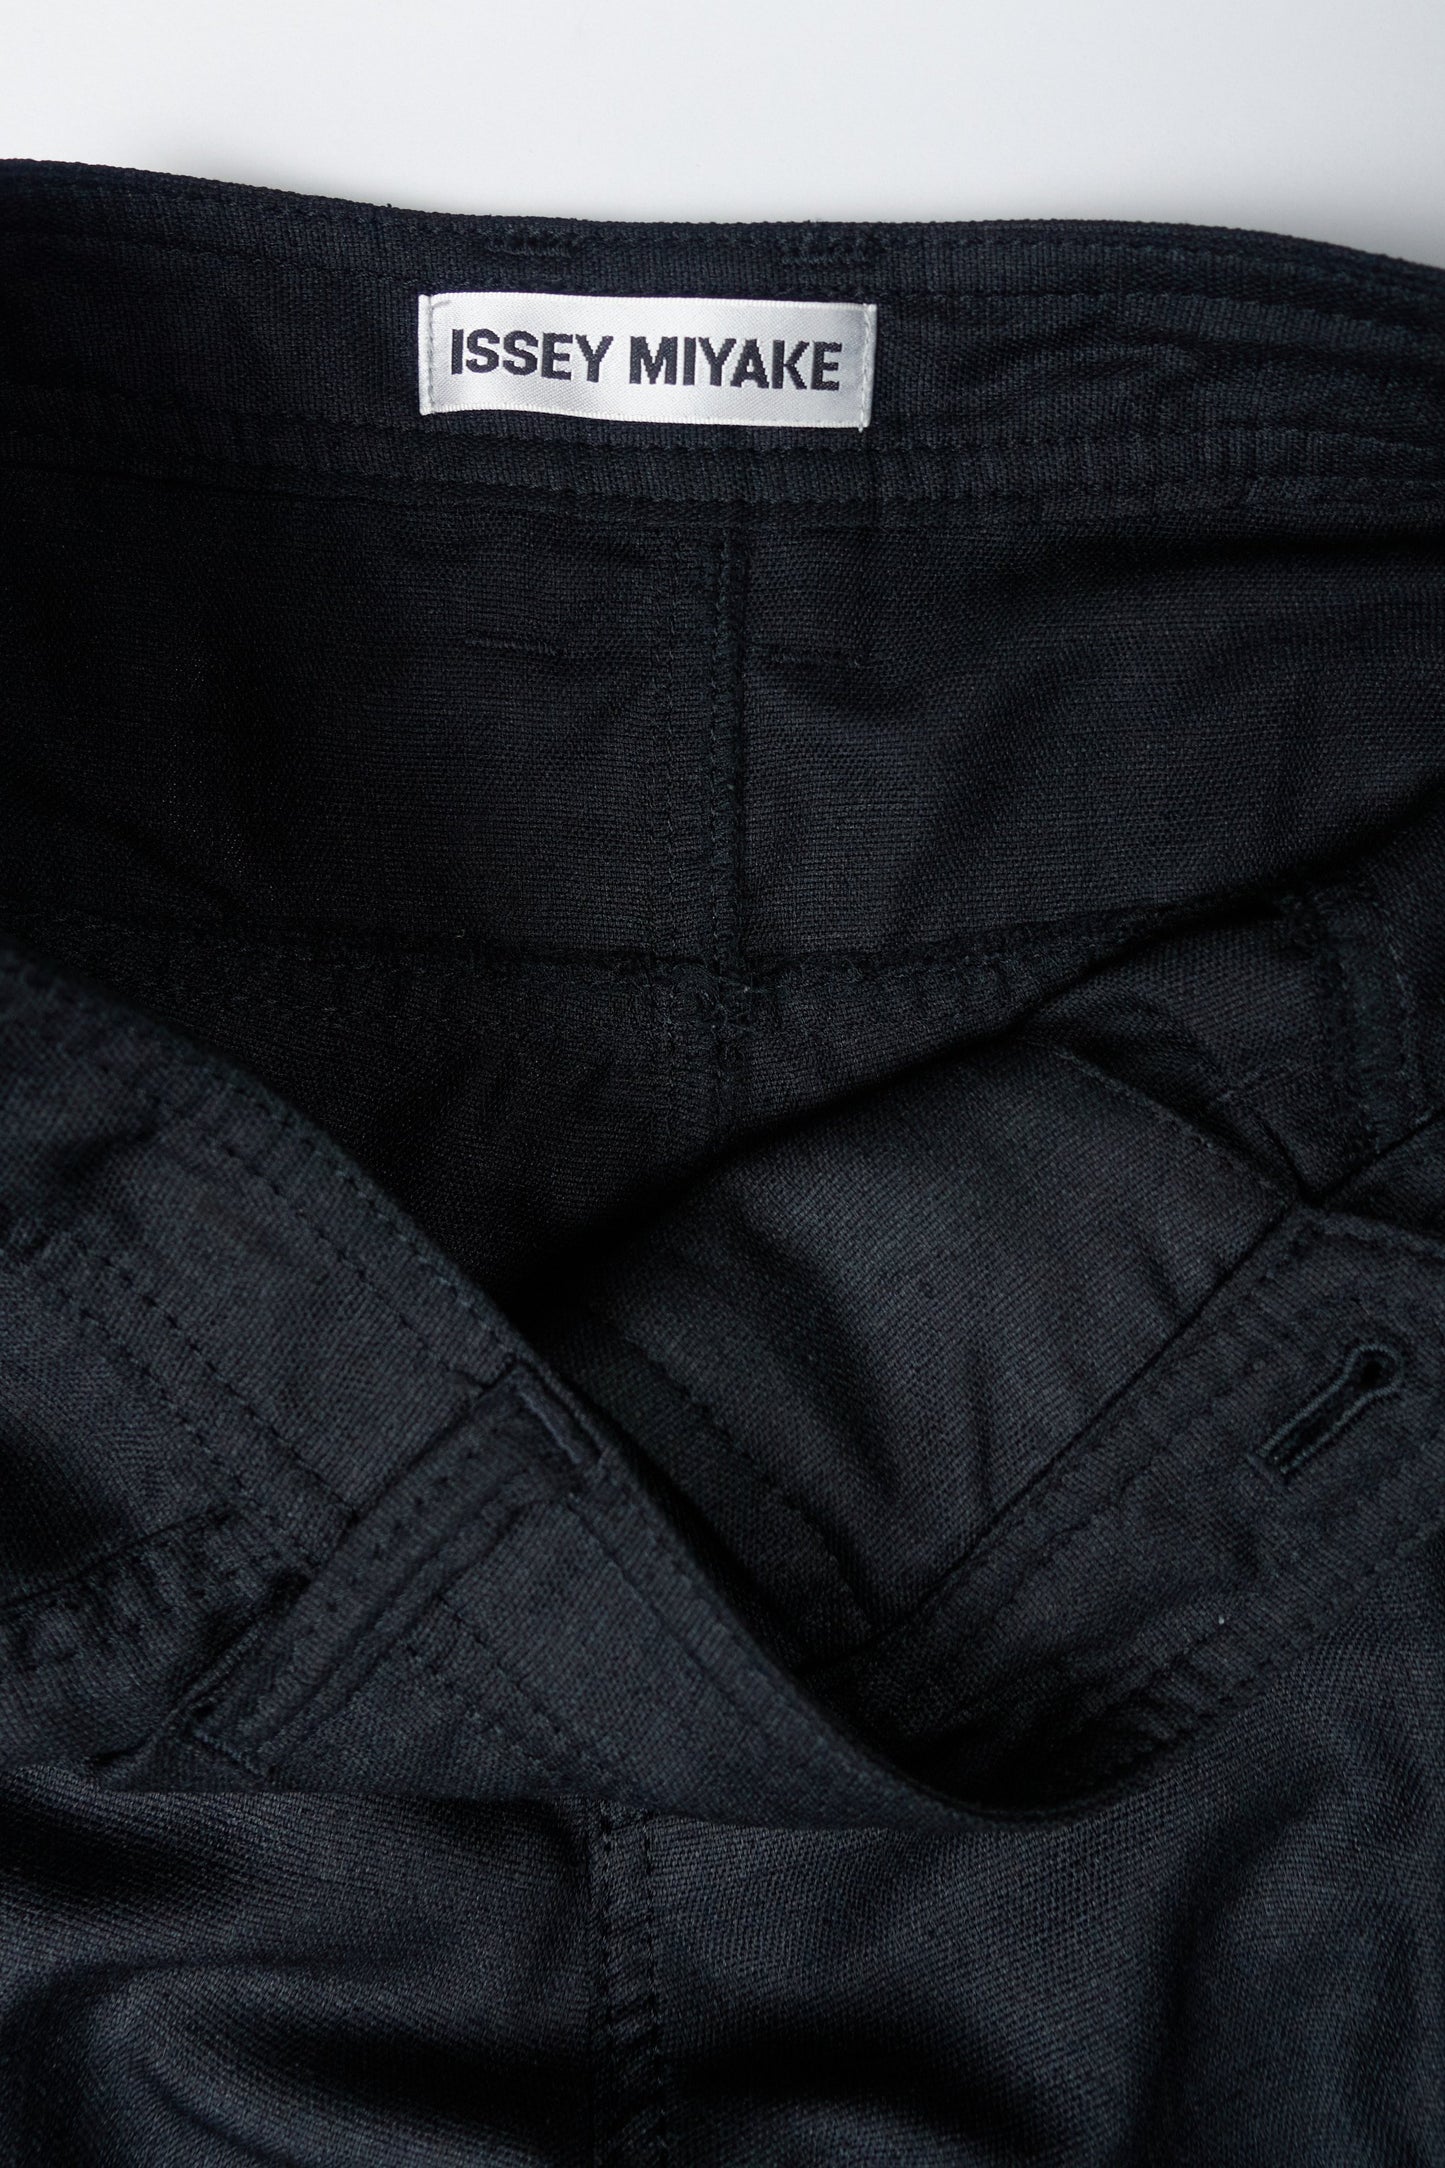 Issey Miyake shirt cuff cropped trousers